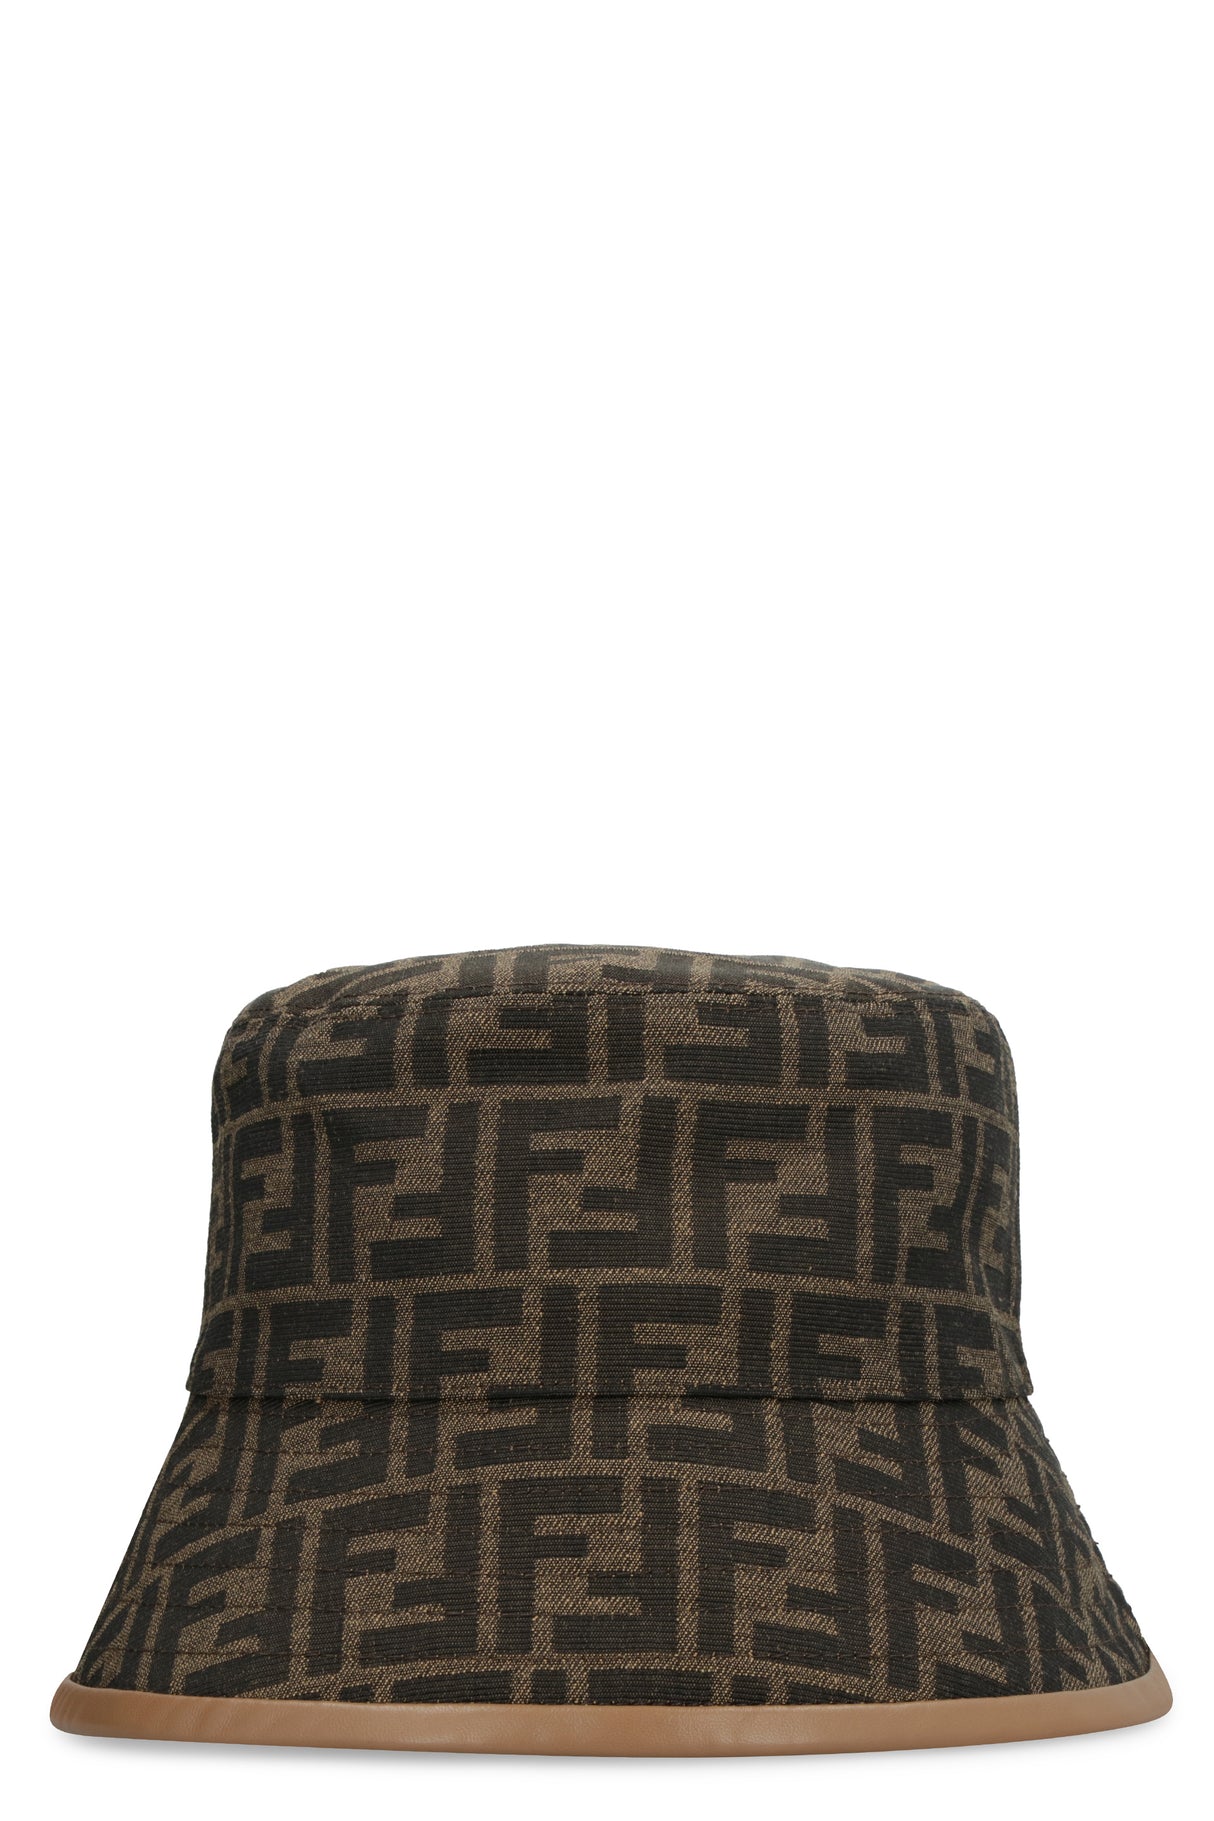 قبعة رجالية جاكارد في اللون البني الغامق